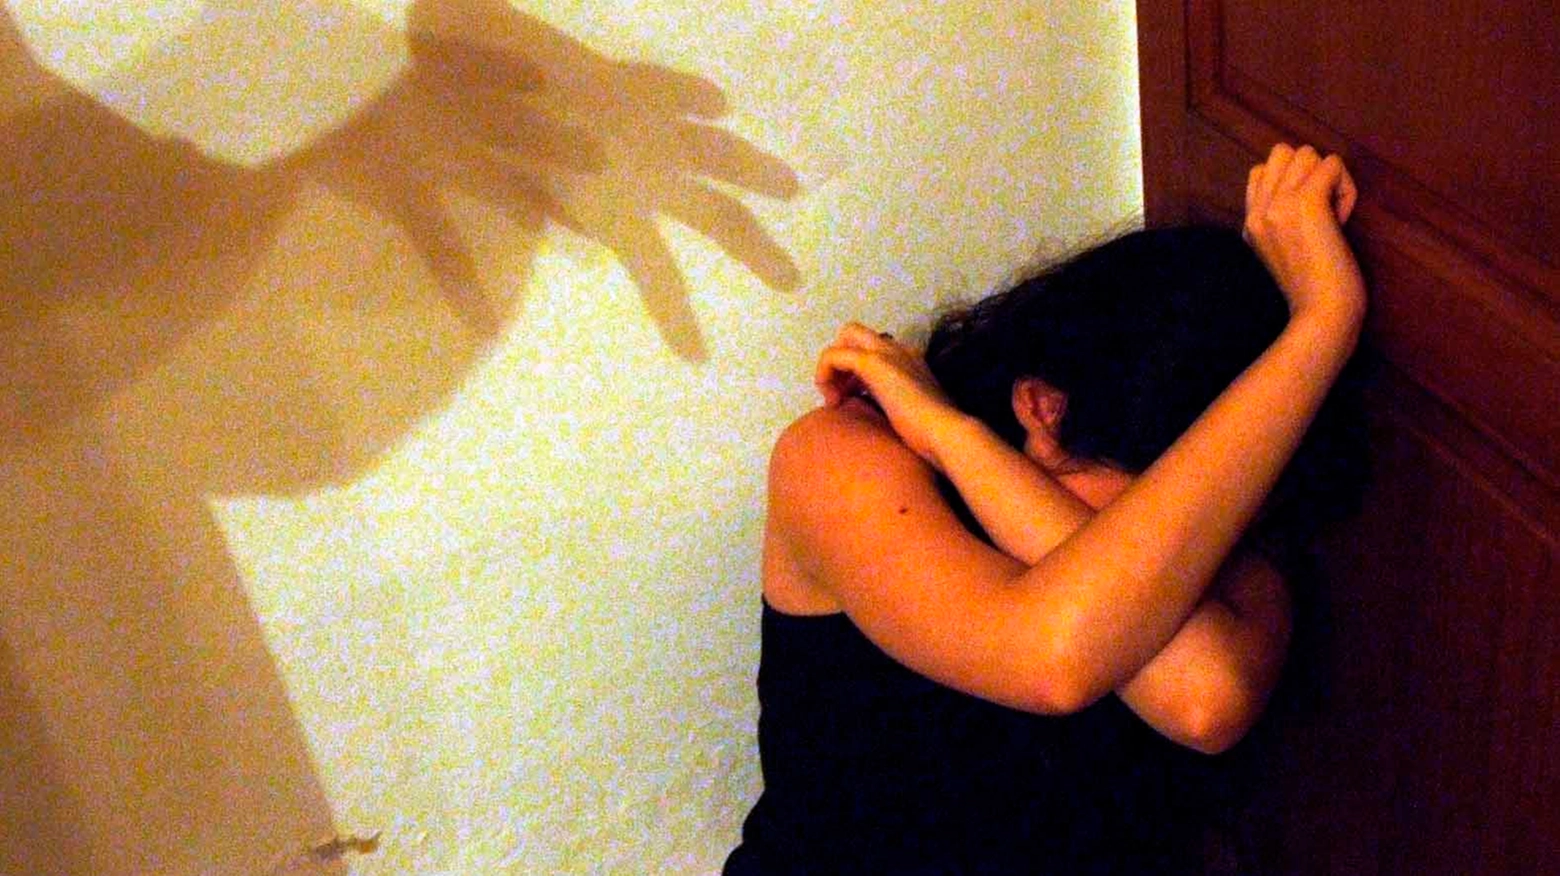 Una donna picchiata tra le mura domestiche. Foto Germogli